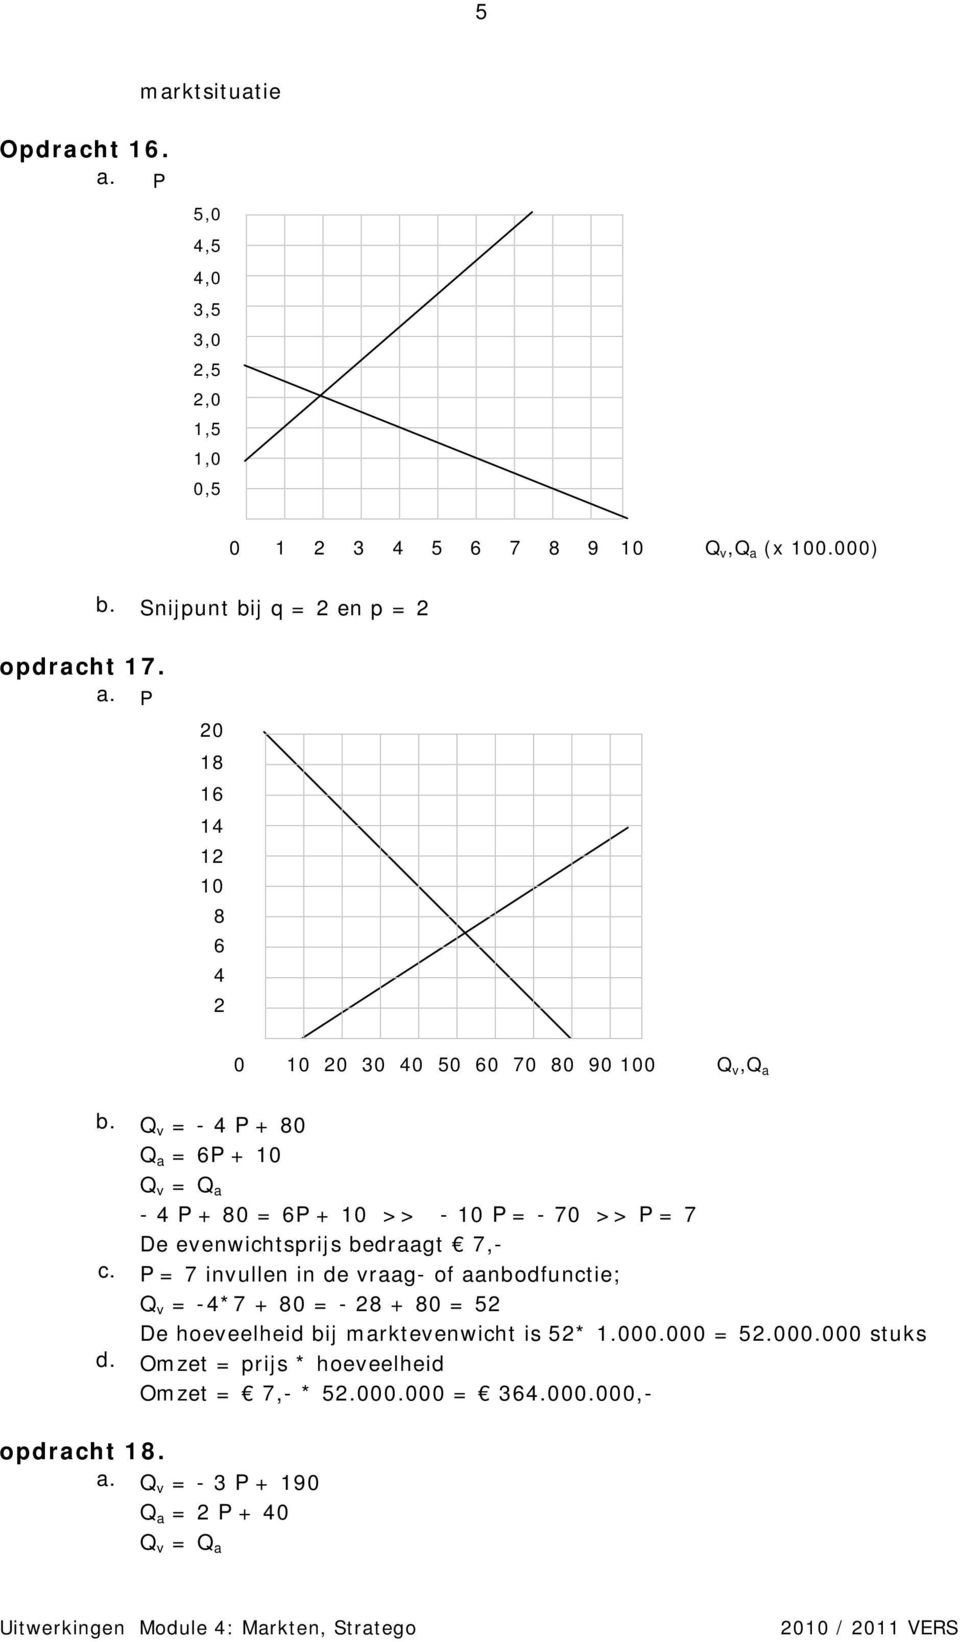 Q v = - 4 P + 80 Q a = 6P + 10 Q v = Q a - 4 P + 80 = 6P + 10 >> - 10 P = - 70 >> P = 7 De evenwichtsprijs bedraagt 7,- c.